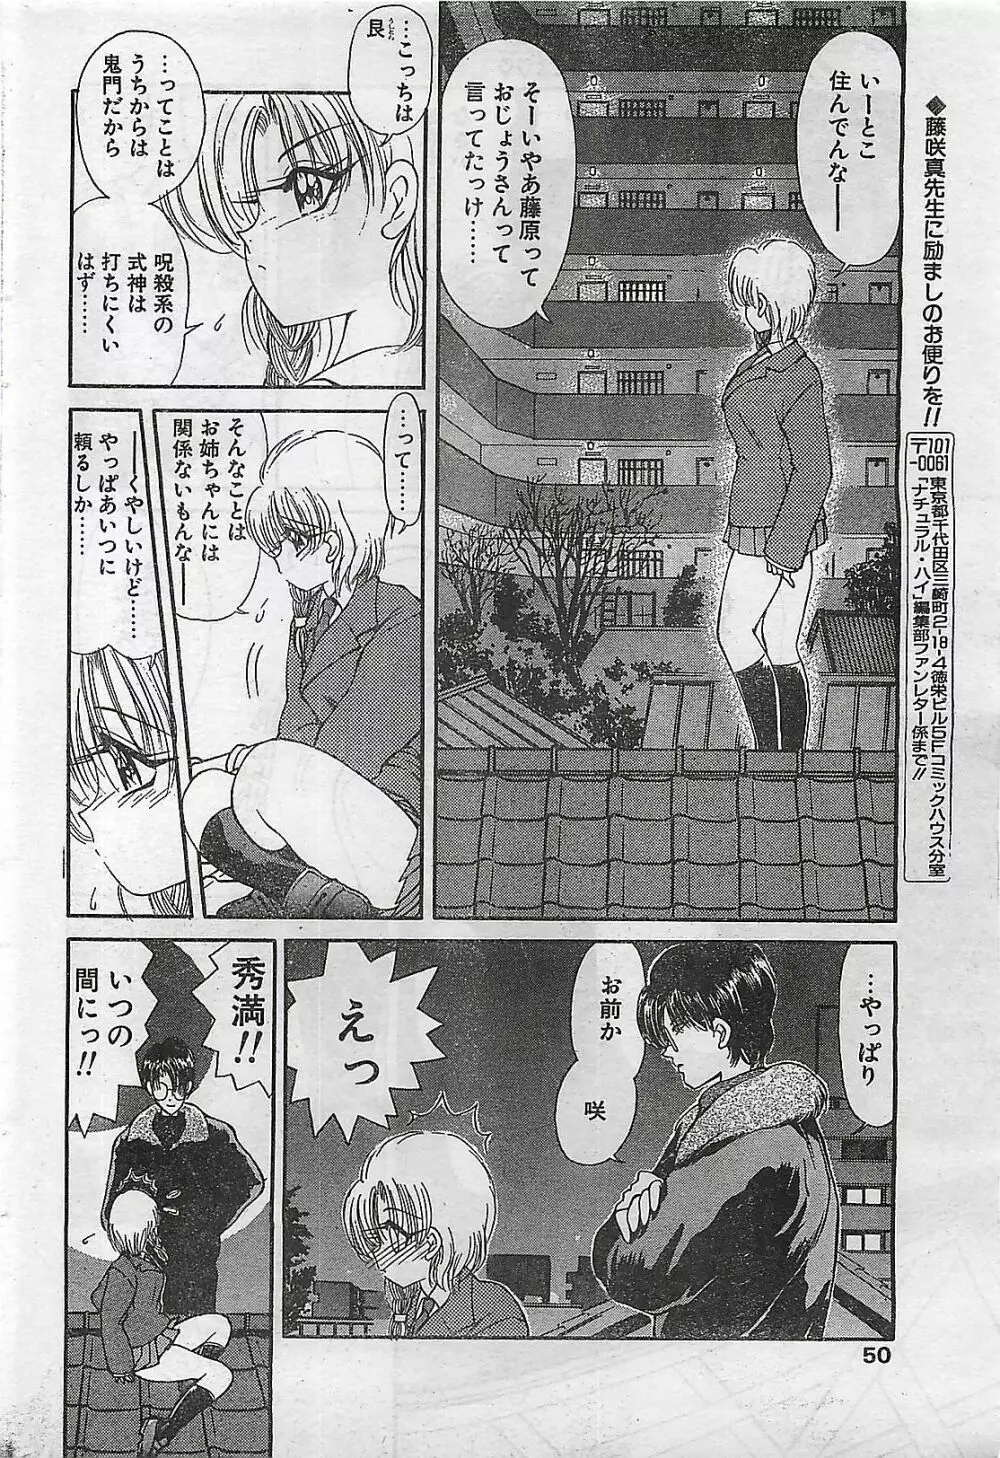 COMIC ナチュラル・ハイ Vol.31 1998年03月号 50ページ